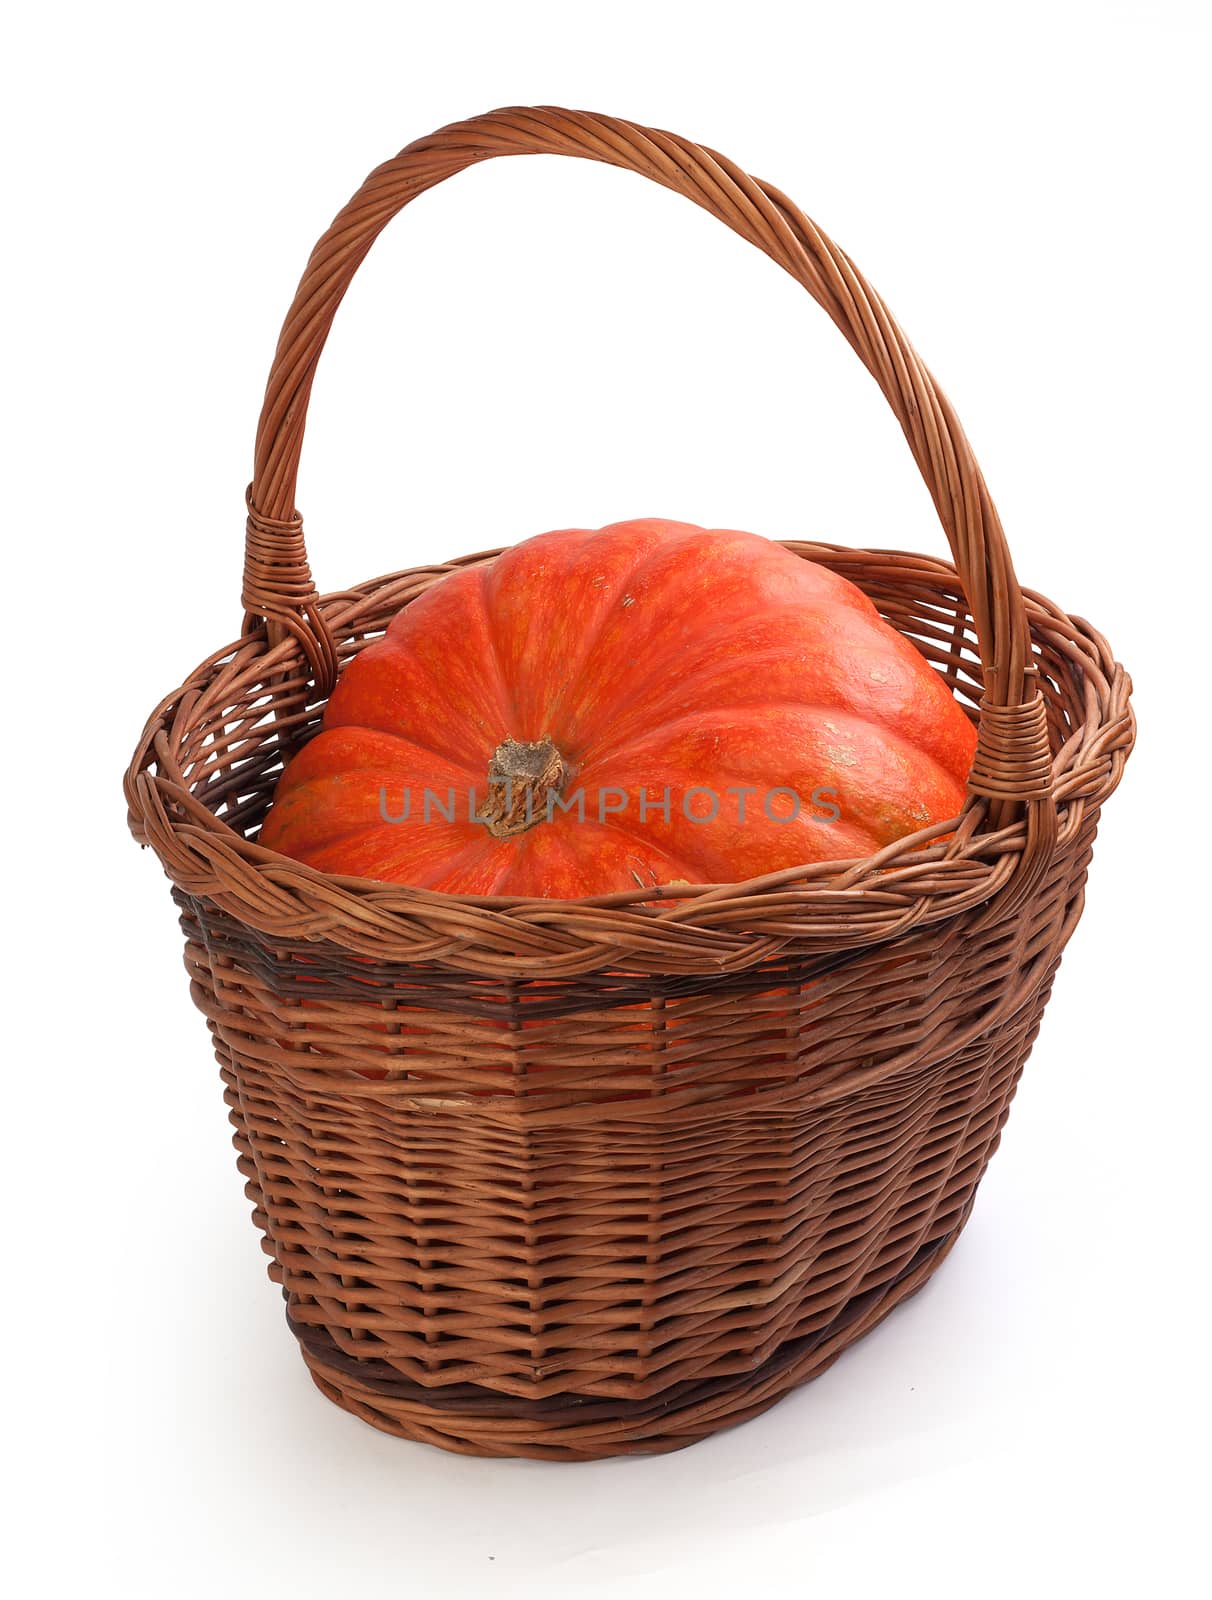 Fresh orange pumpkin in the brown basket